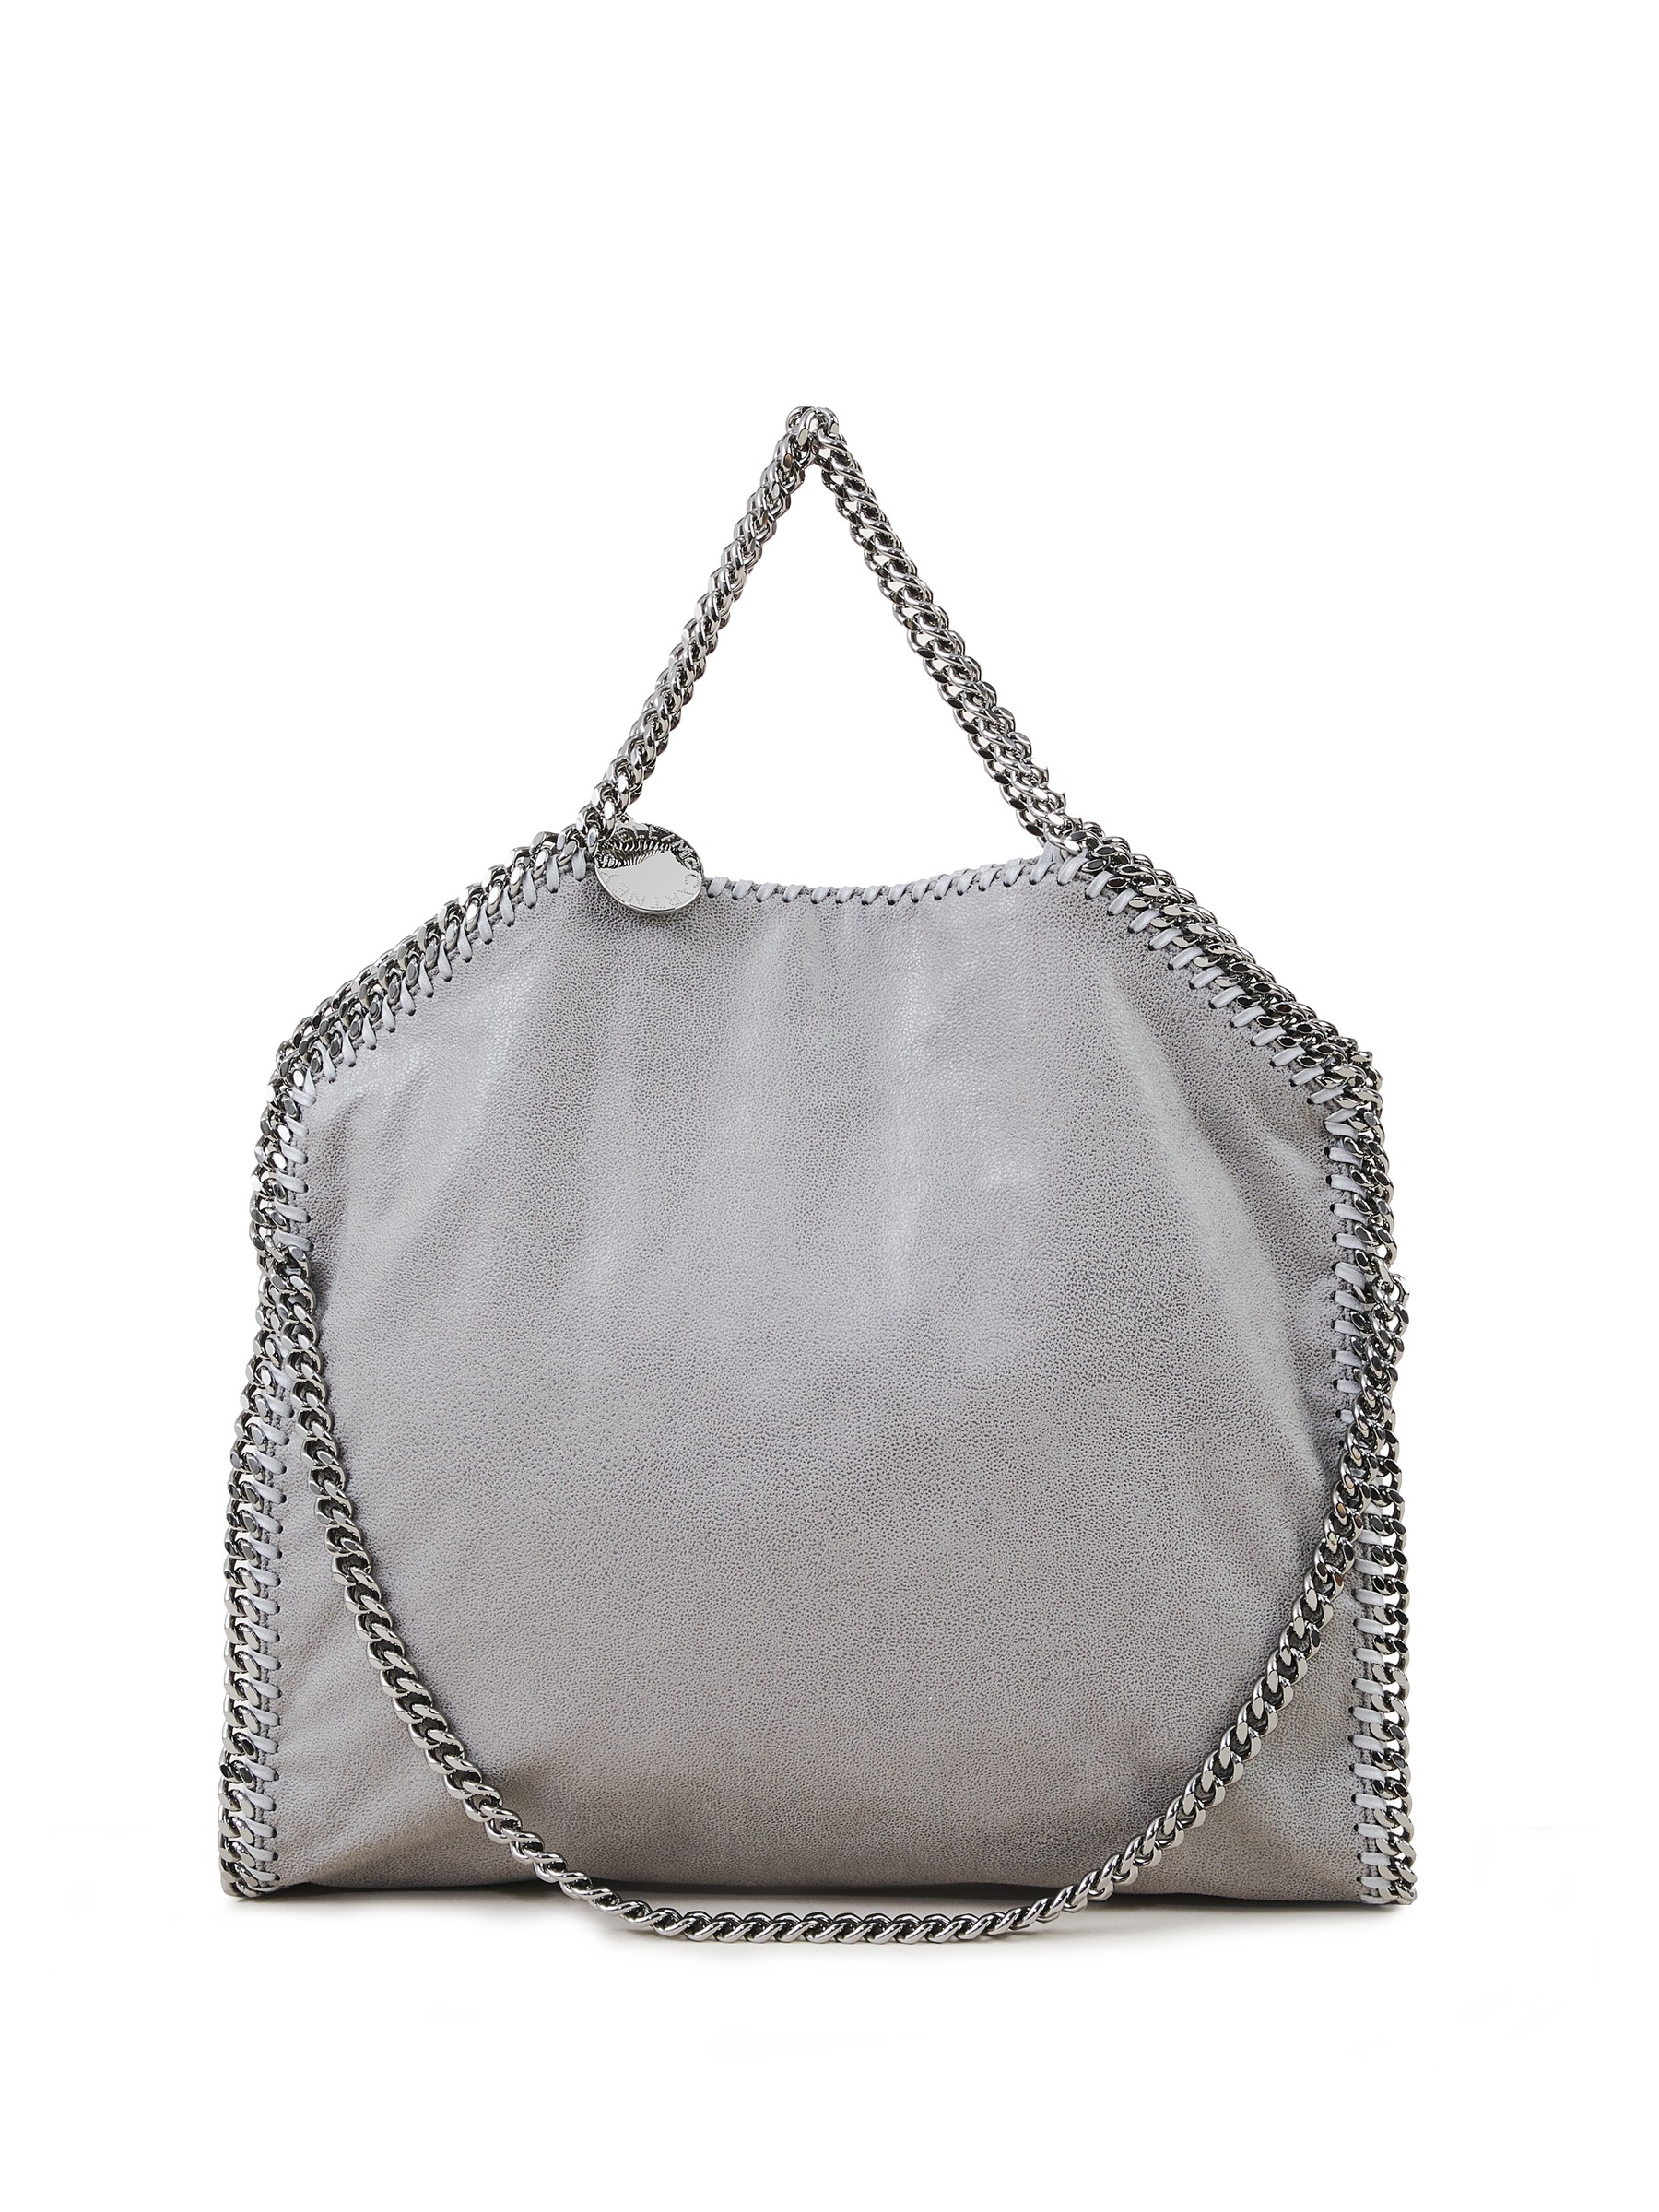 Stella McCartney Handbag 'Falabella 3 Chain' Grey | Shopper